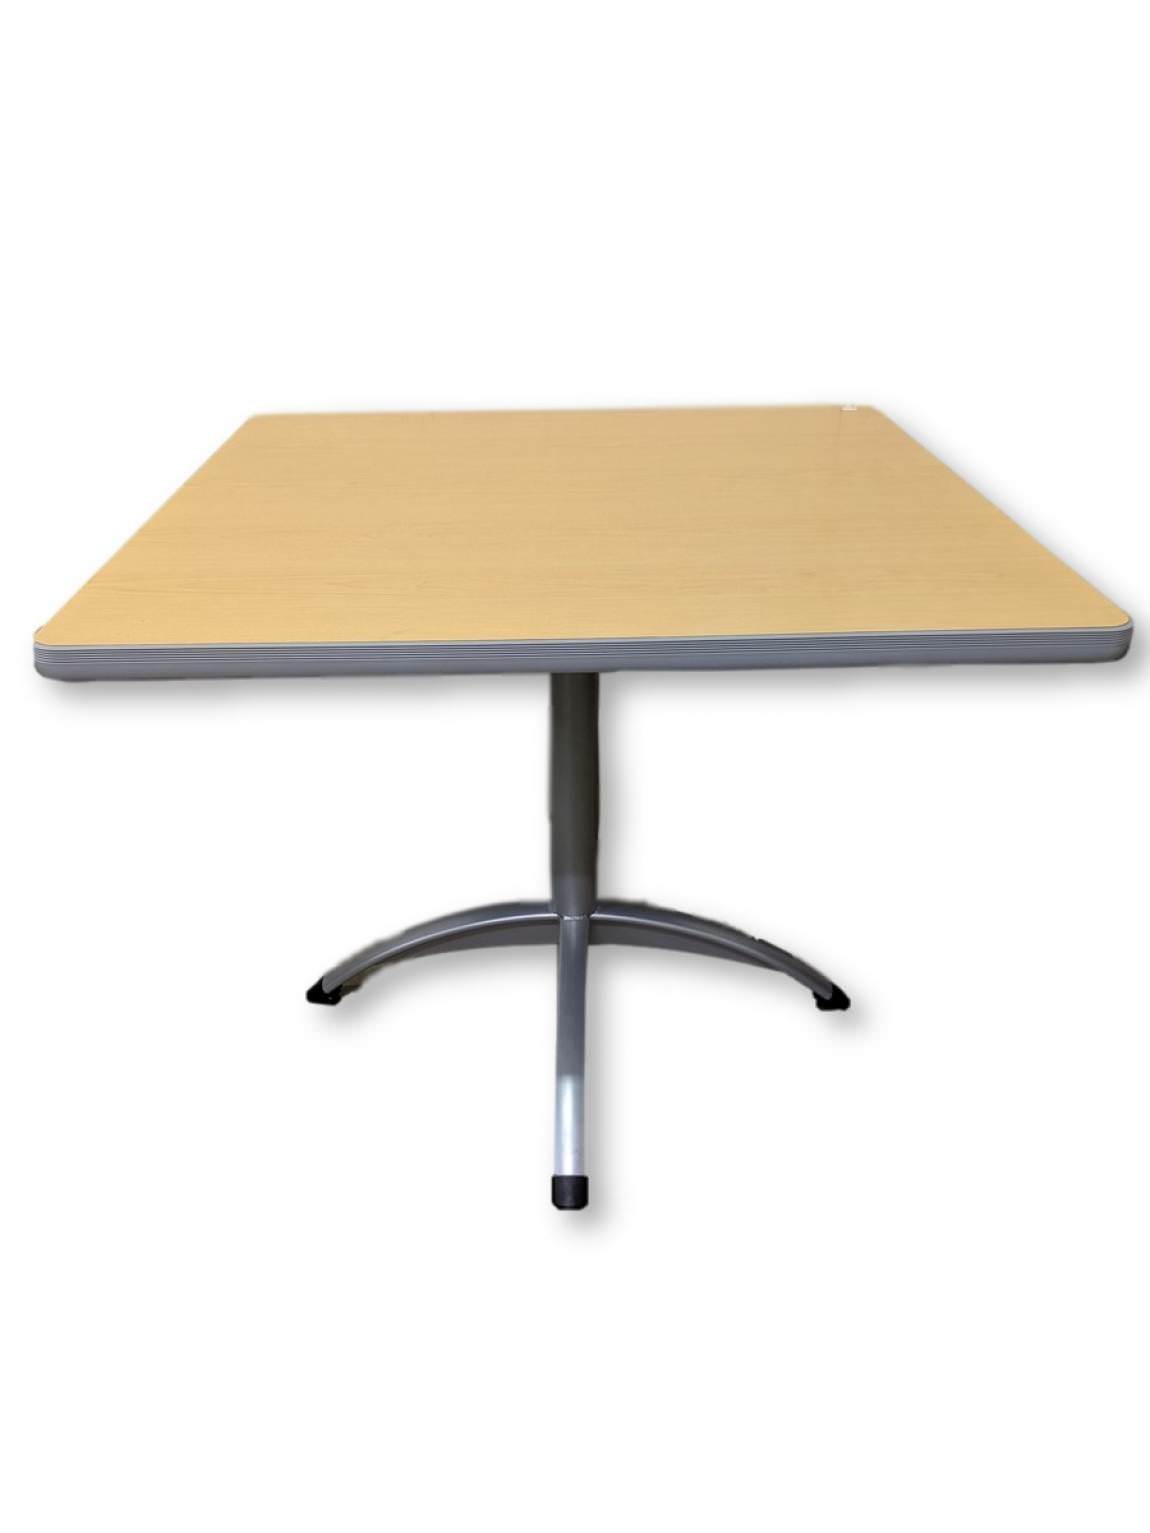 Oak Laminate Square Table – 36x36